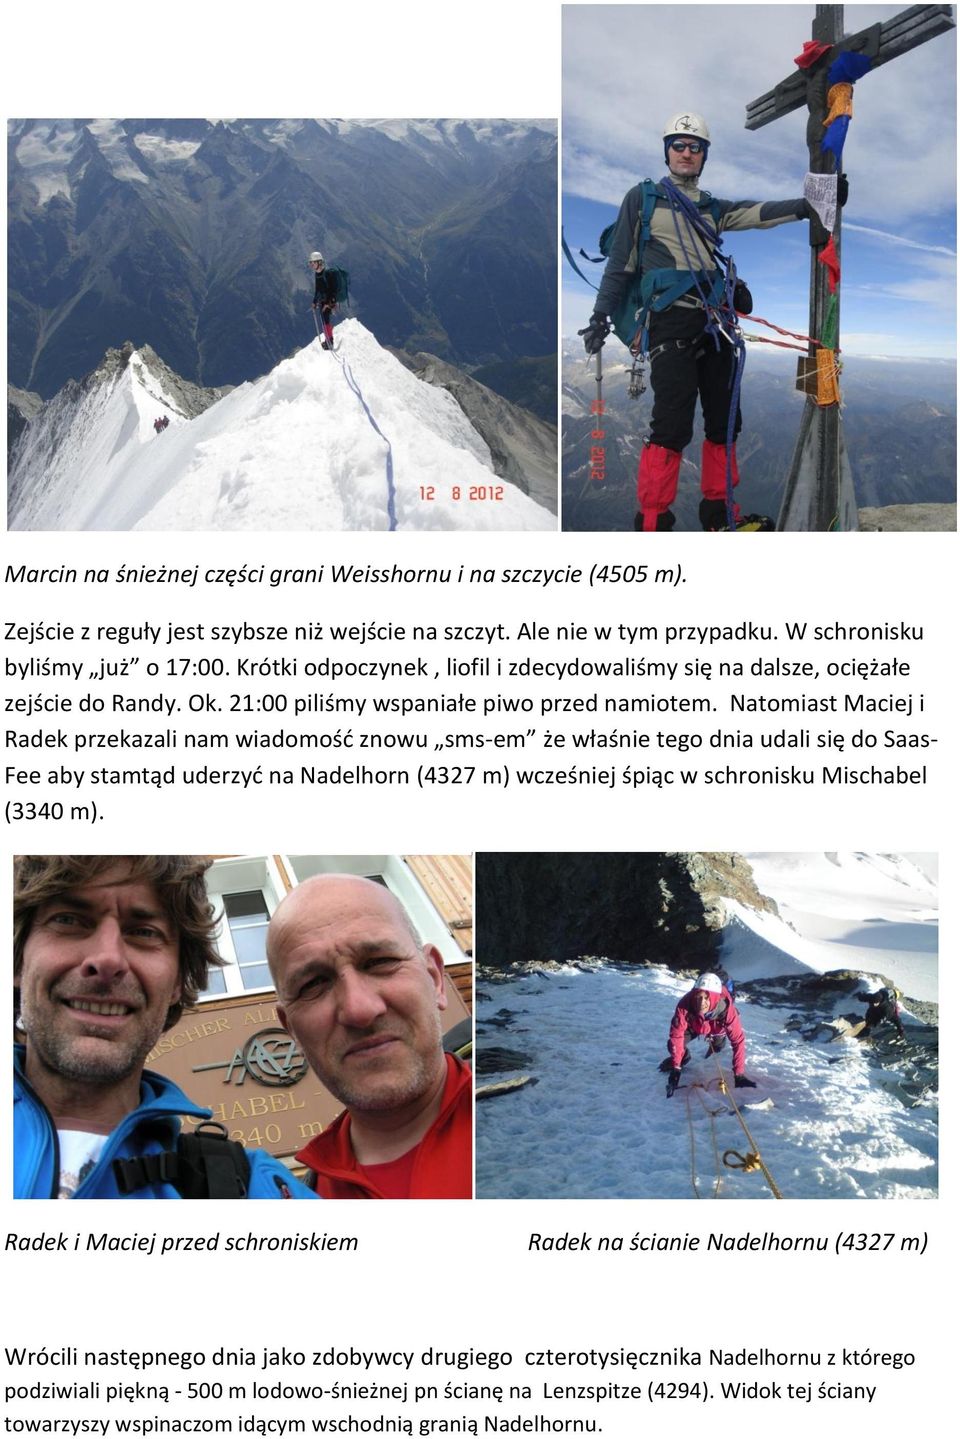 Natomiast Maciej i Radek przekazali nam wiadomość znowu sms-em że właśnie tego dnia udali się do Saas- Fee aby stamtąd uderzyć na Nadelhorn (4327 m) wcześniej śpiąc w schronisku Mischabel (3340 m).